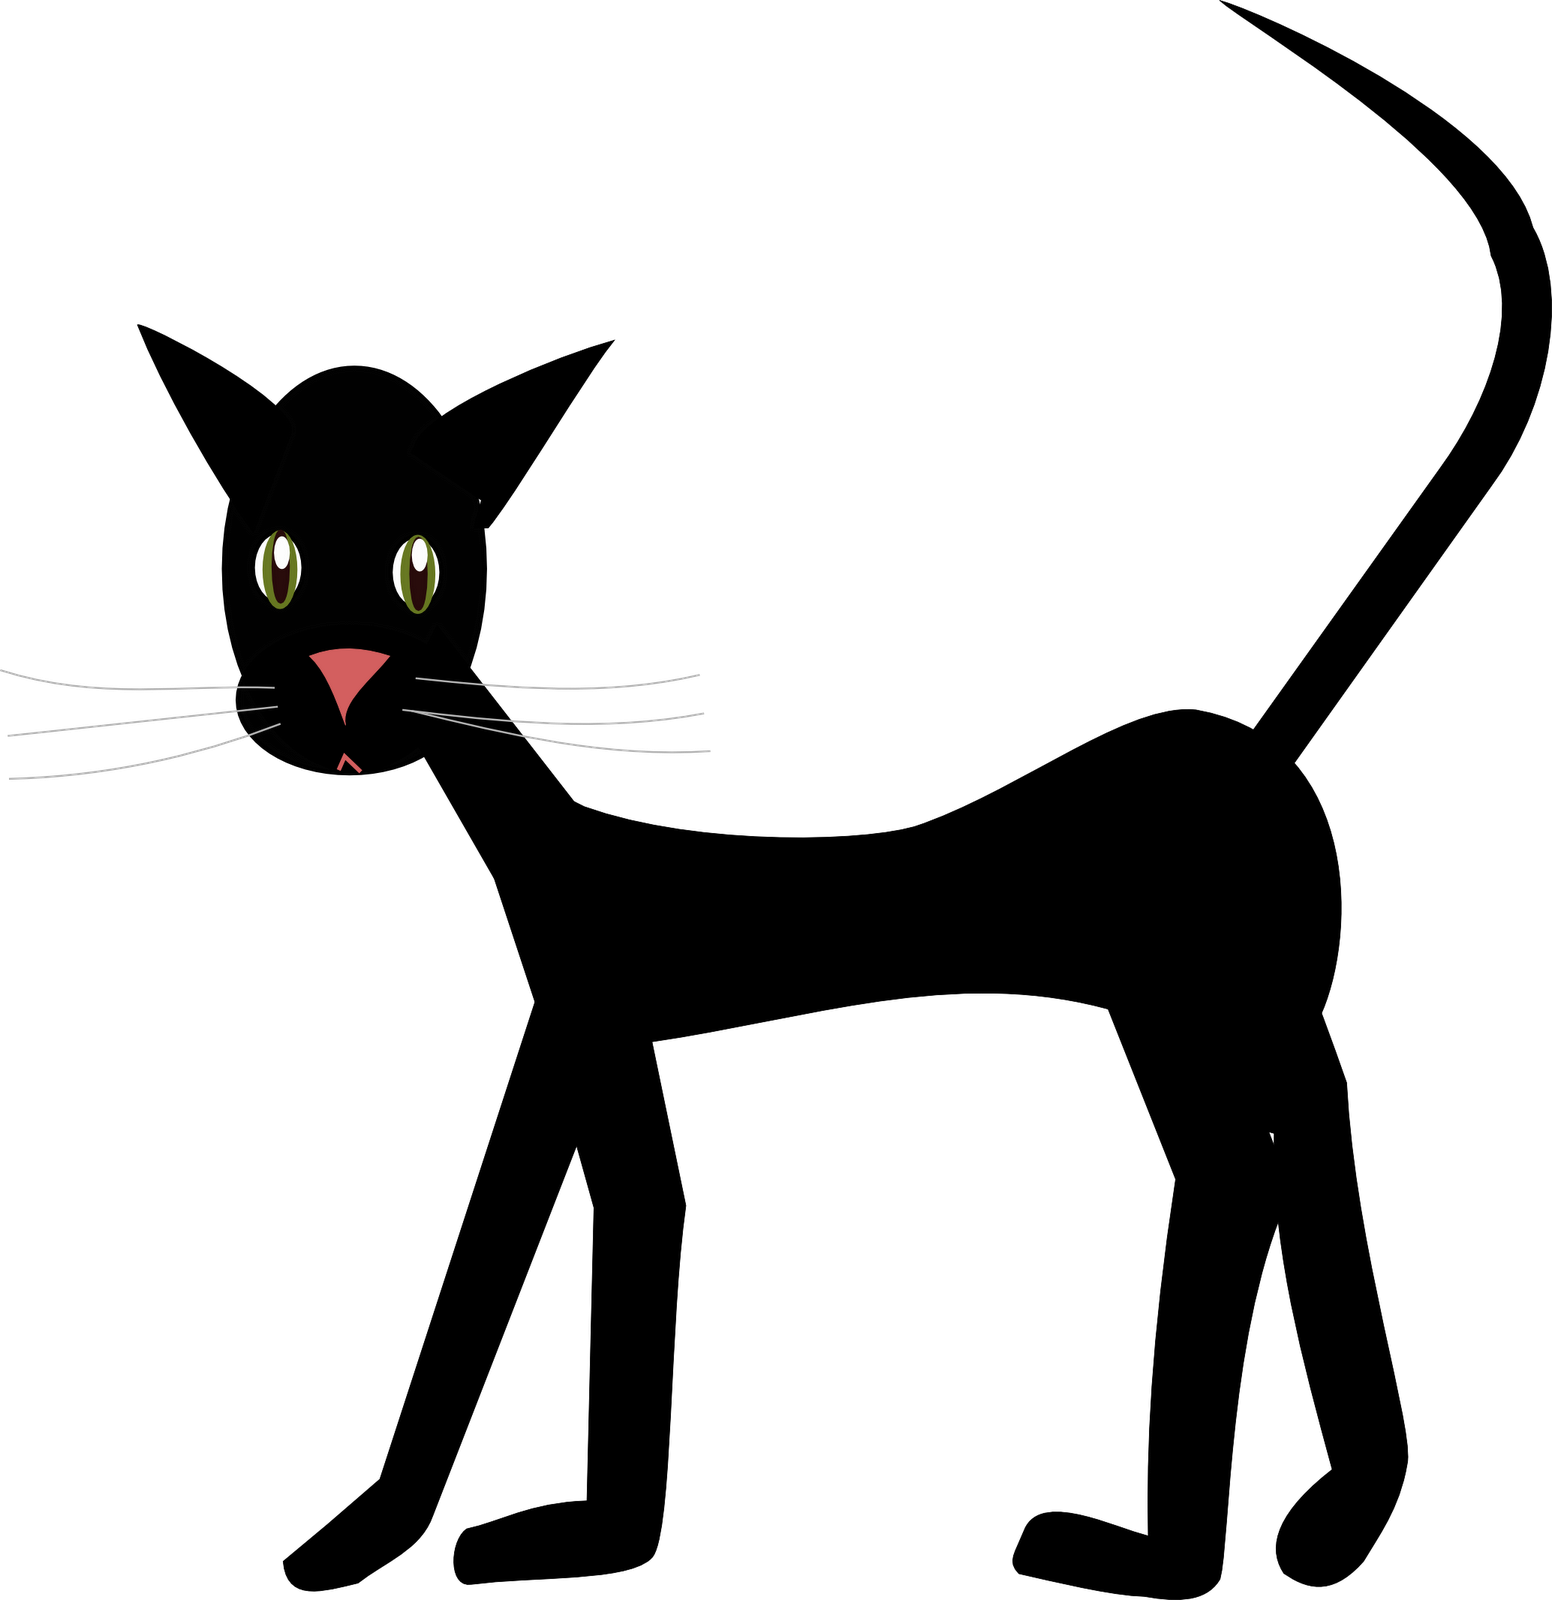 Cat images clip art. Pet clipart transparent background